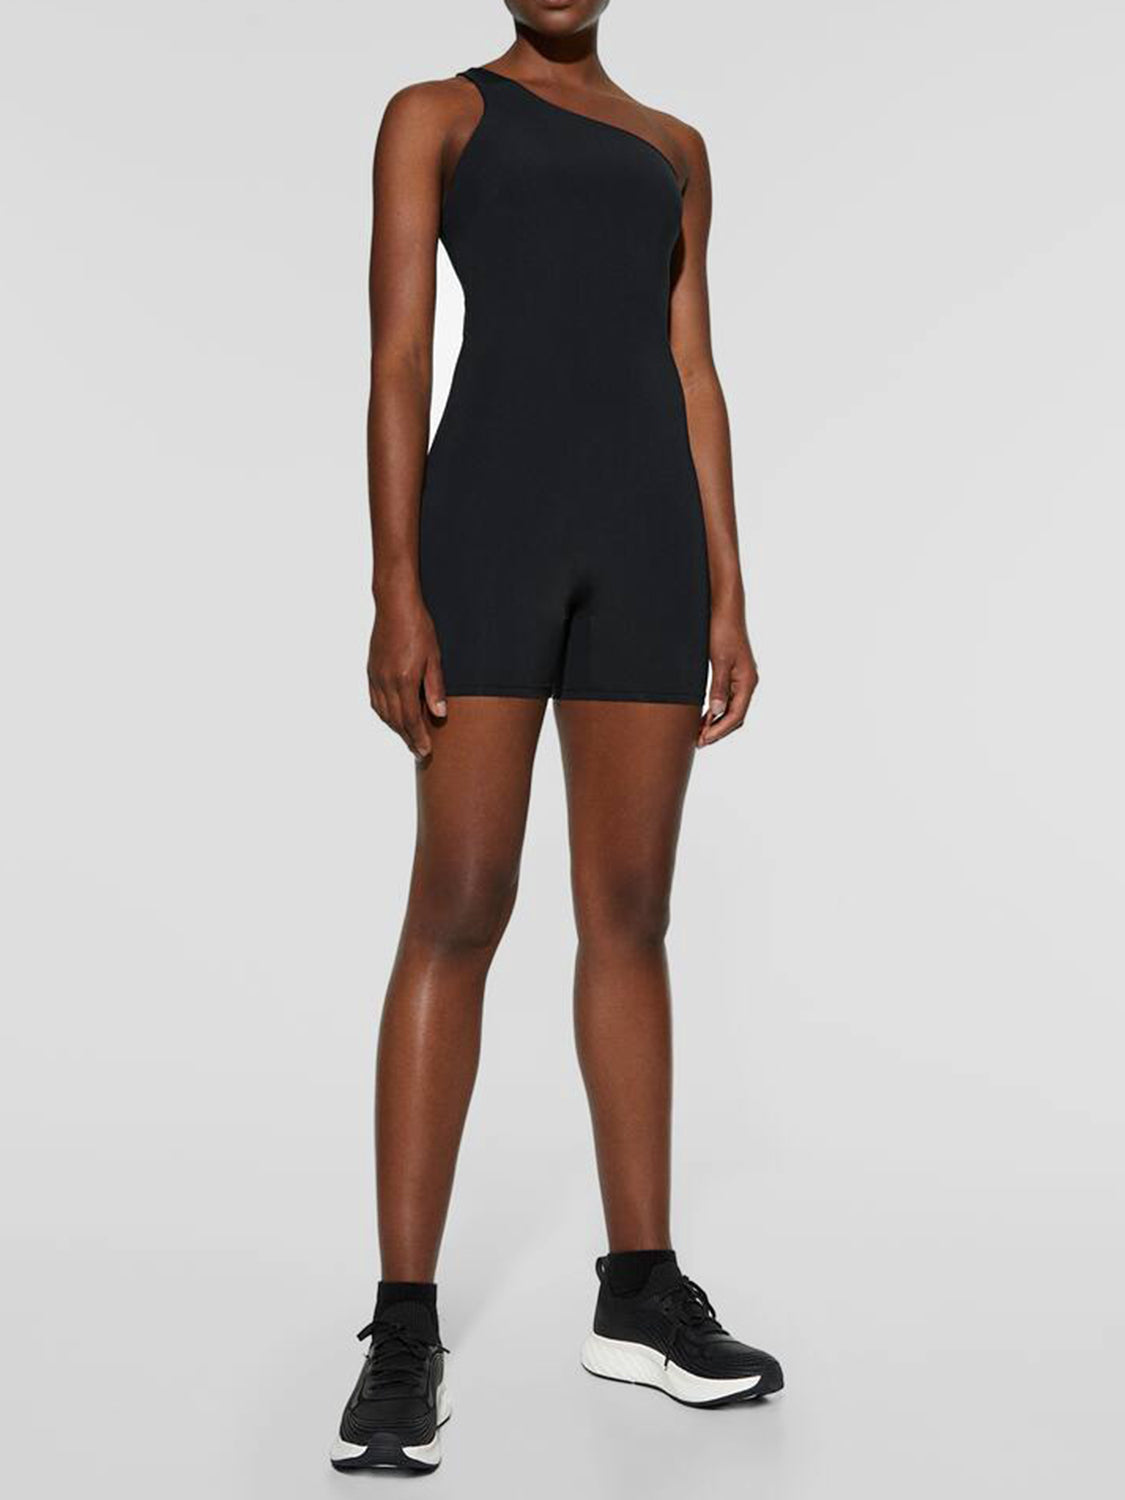 TEEK - Black Single Shoulder Active Shorts Romper Rompers TEEK Trend   